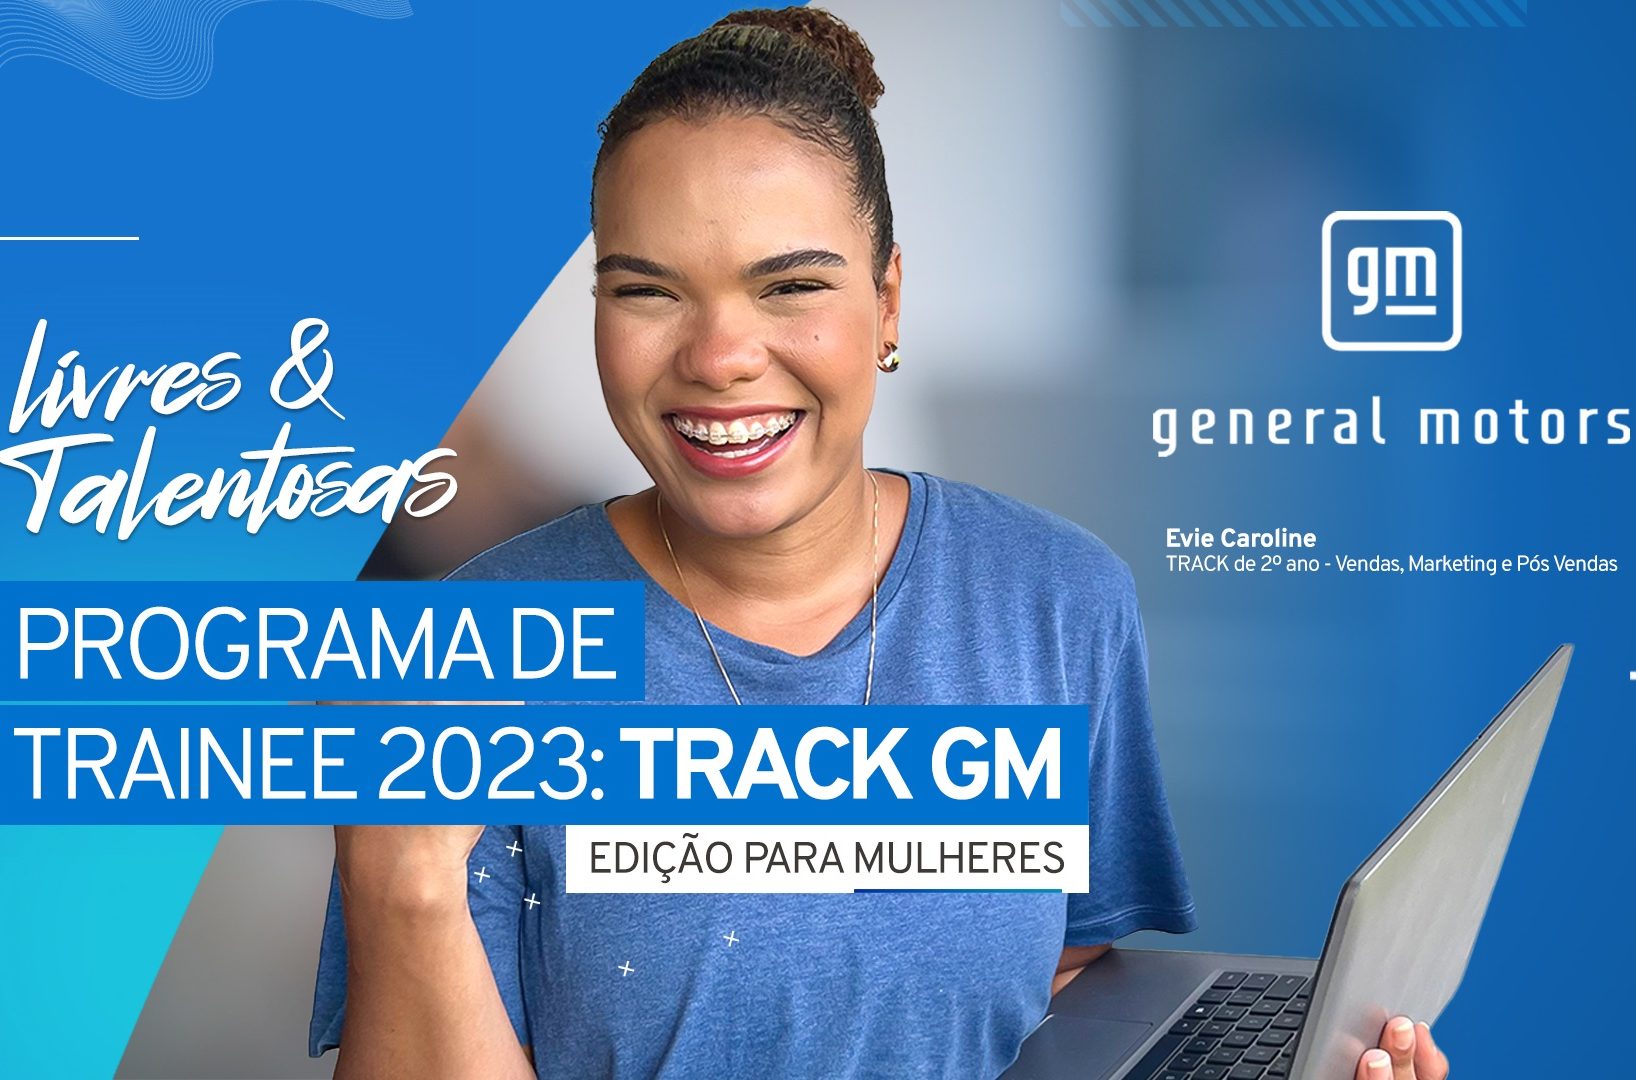 Programa trainee lançado pela General Motors para o ano de 2023 terá edição especial voltada apenas para mulheres. As inscrições serão feitas a partir do site da empresa Cia de Talentos.